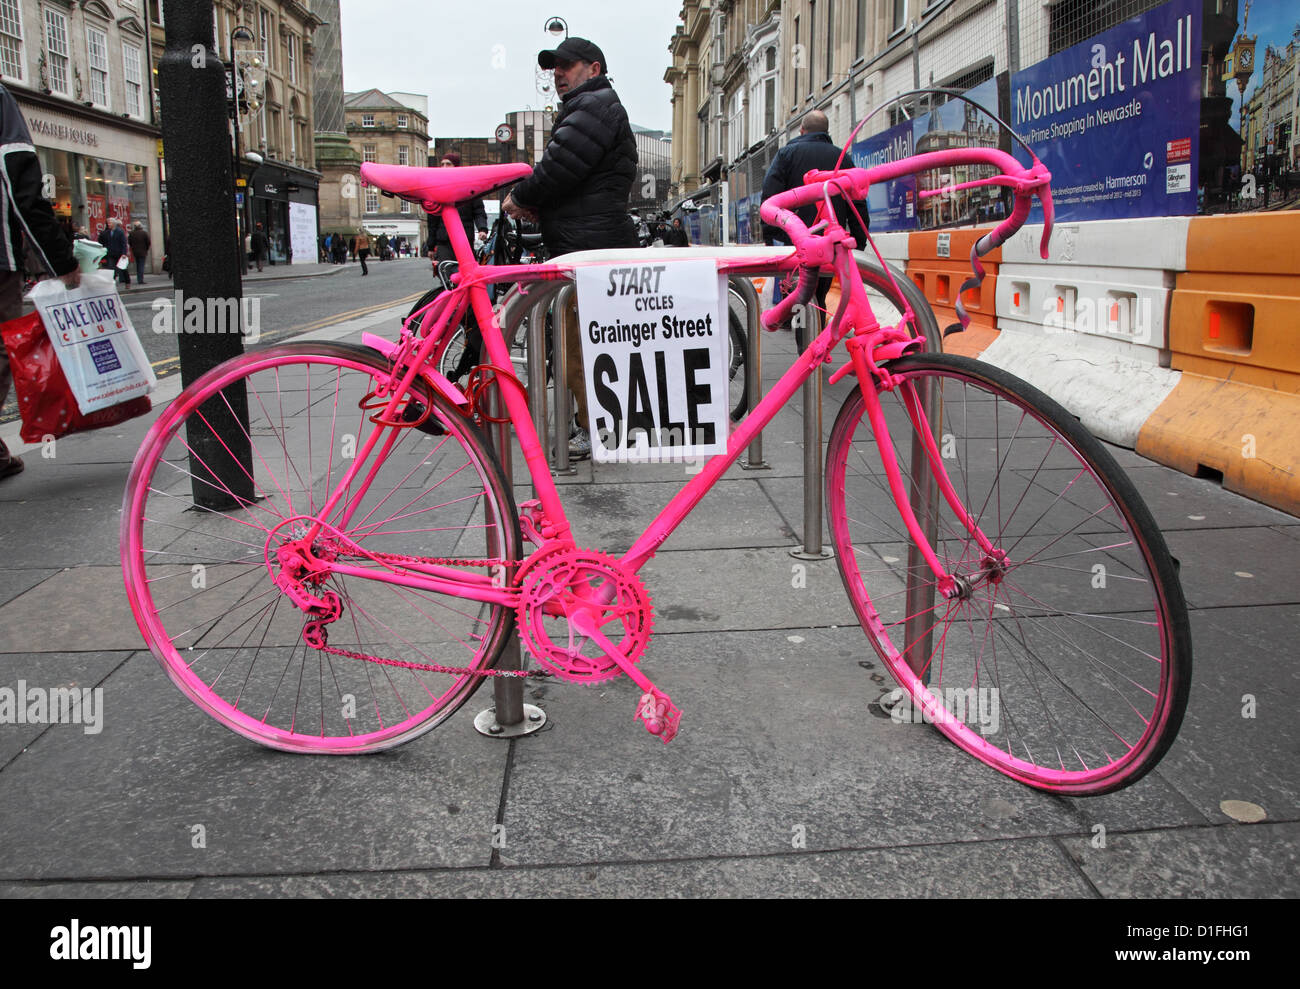 Ein Fahrrad gemalt fluoreszierendes Pink verwendet einen Zyklus Shop innerhalb von Newcastle City Centre North East England UK inserieren Stockfoto